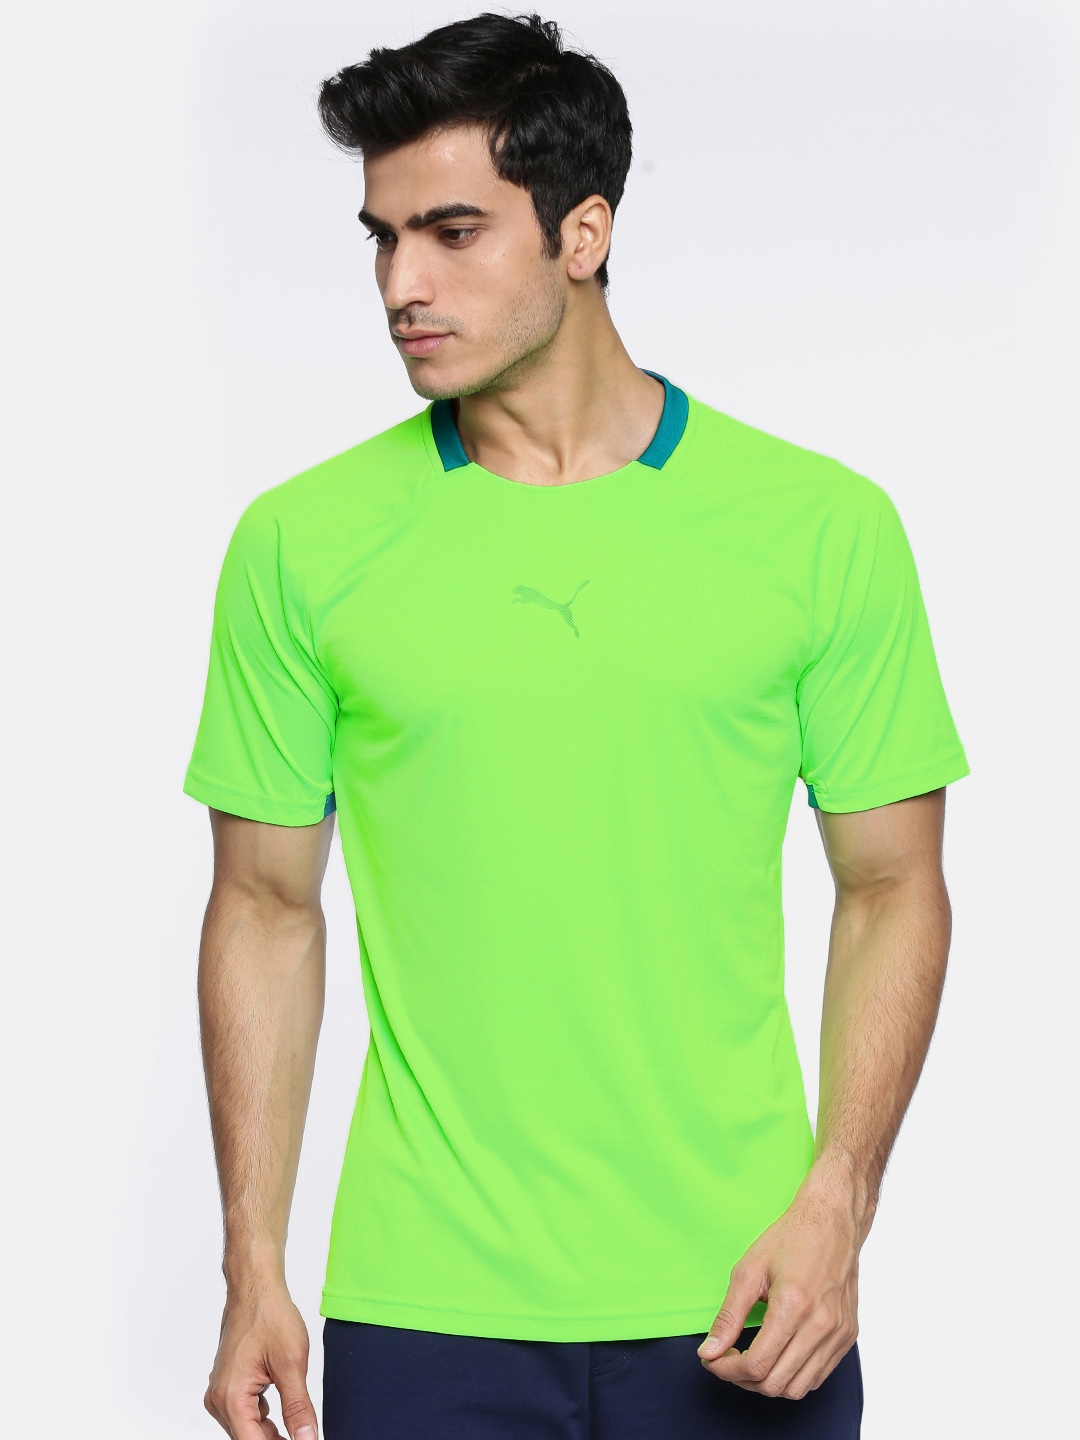 neon puma shirt